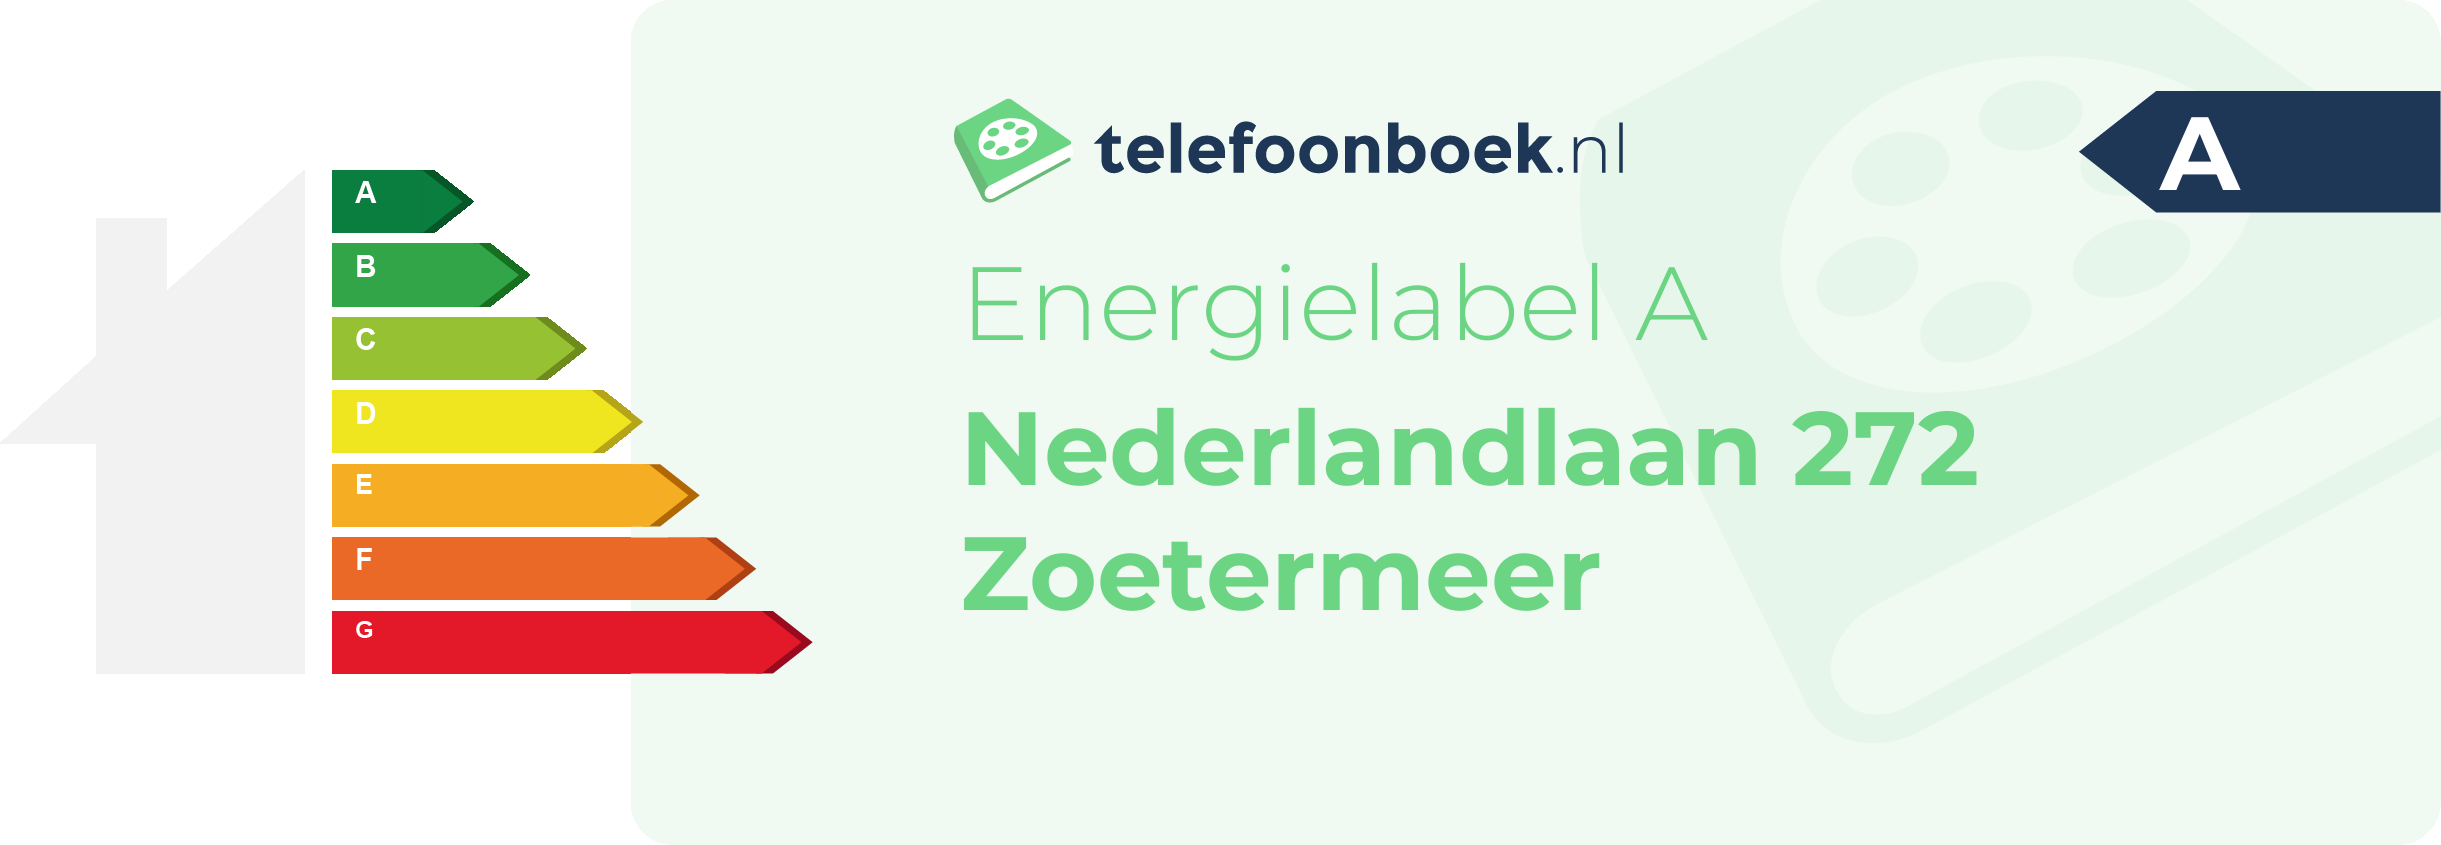 Energielabel Nederlandlaan 272 Zoetermeer